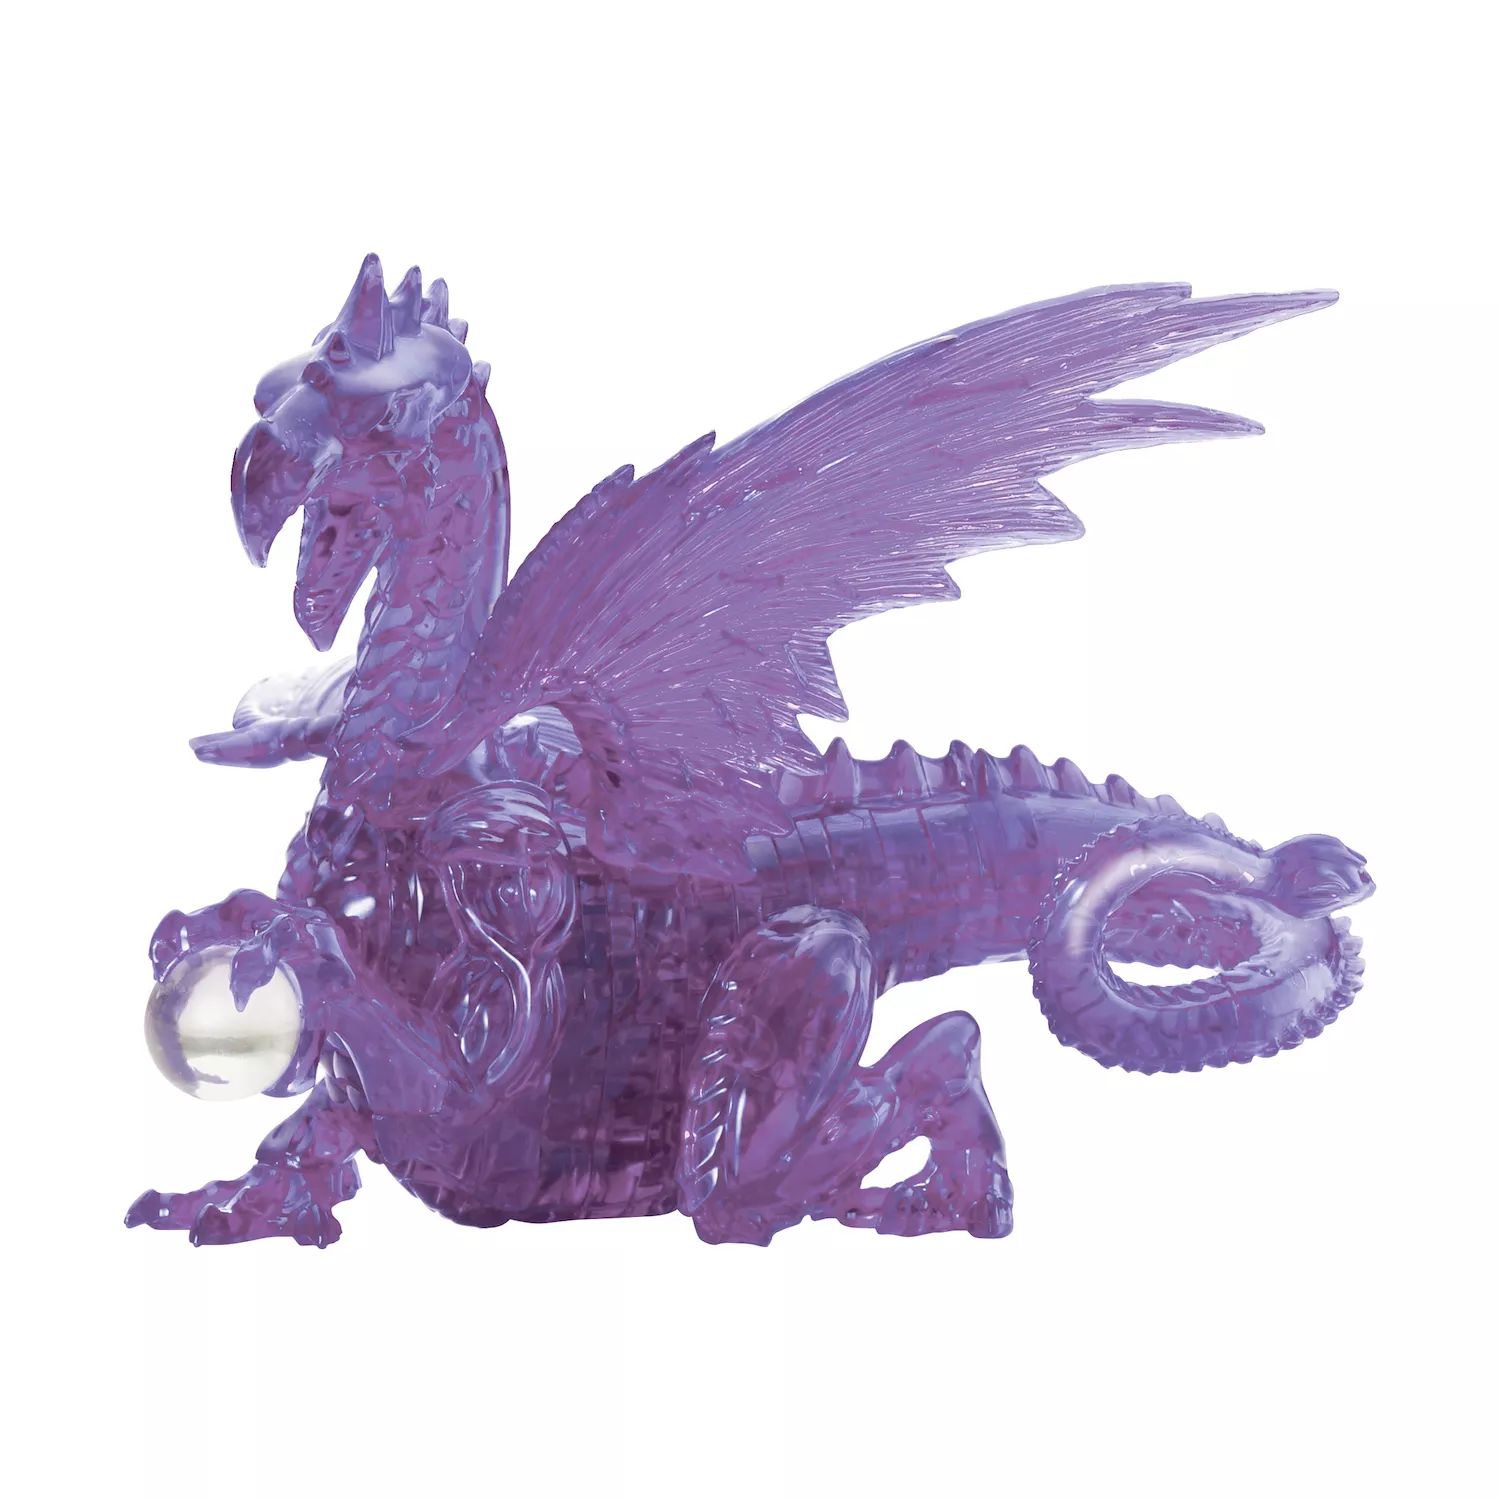 Университетские игры 3D-хрустальный пазл - Дракон, 56 предметов University Games фото